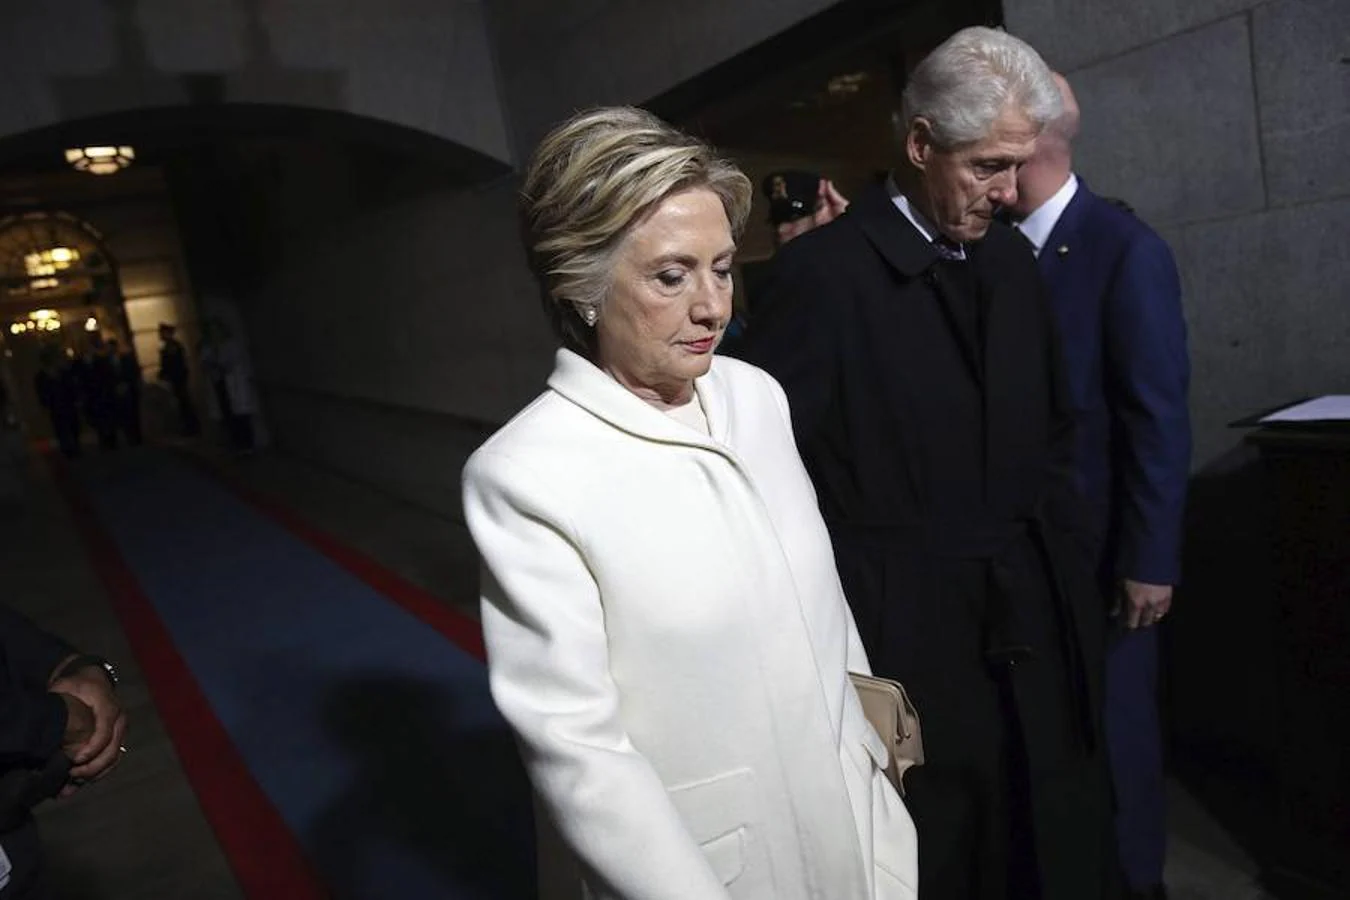 El matrimonio Clinton, antes de salir hacia el escenario de la ceremonia